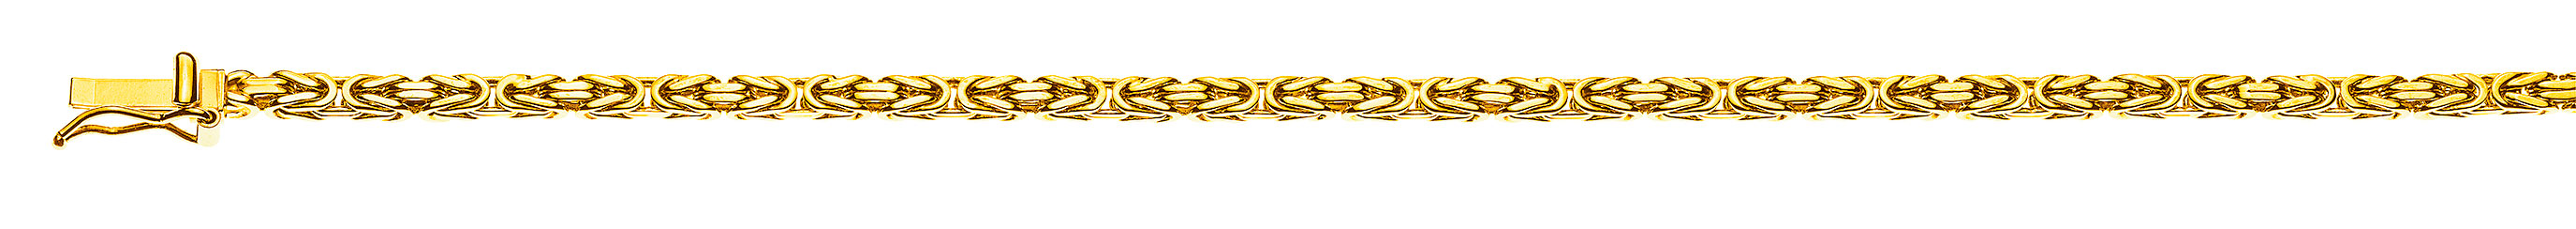 AURONOS Prestige Collier en or jaune 18K chaîne royale 60cm 2.5mm